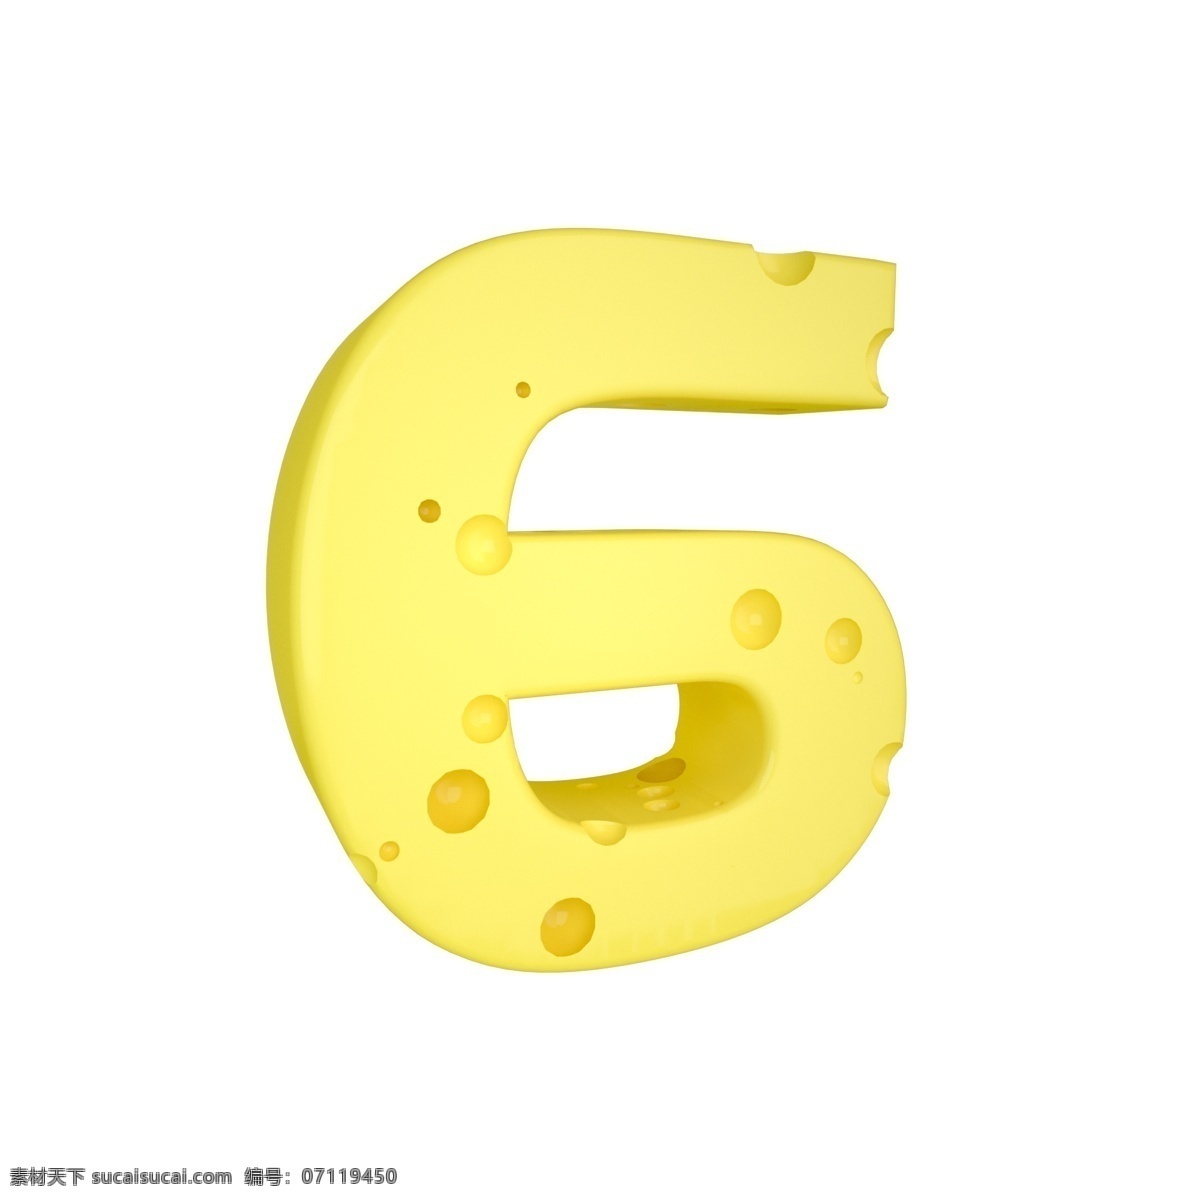 c4d 创意 奶酪 数字 装饰 3d 黄色 立体 食物 平面海报配图 电商淘宝装饰 可爱 柔和 数字6